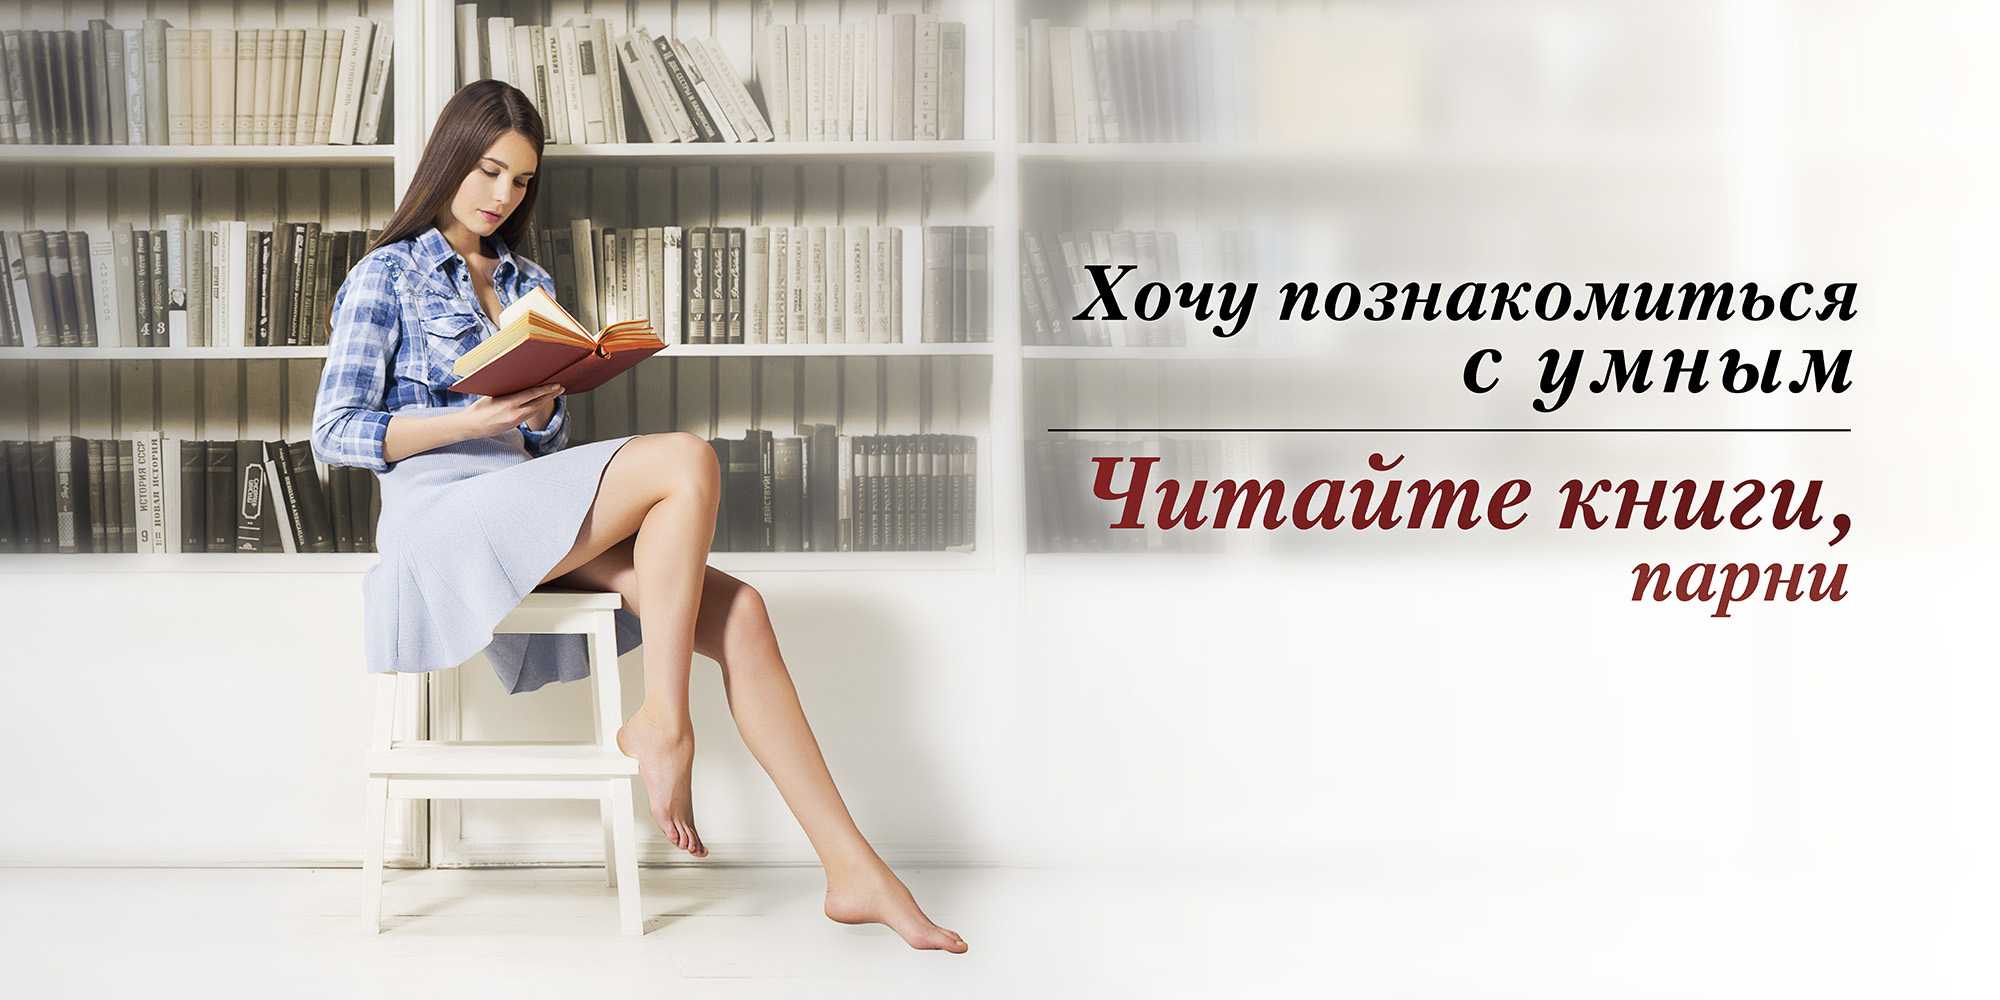 Слушать умную книгу. Реклама книги. Призыв к чтению. Социальная реклама библиотеки. Реклама книг в библиотеке.